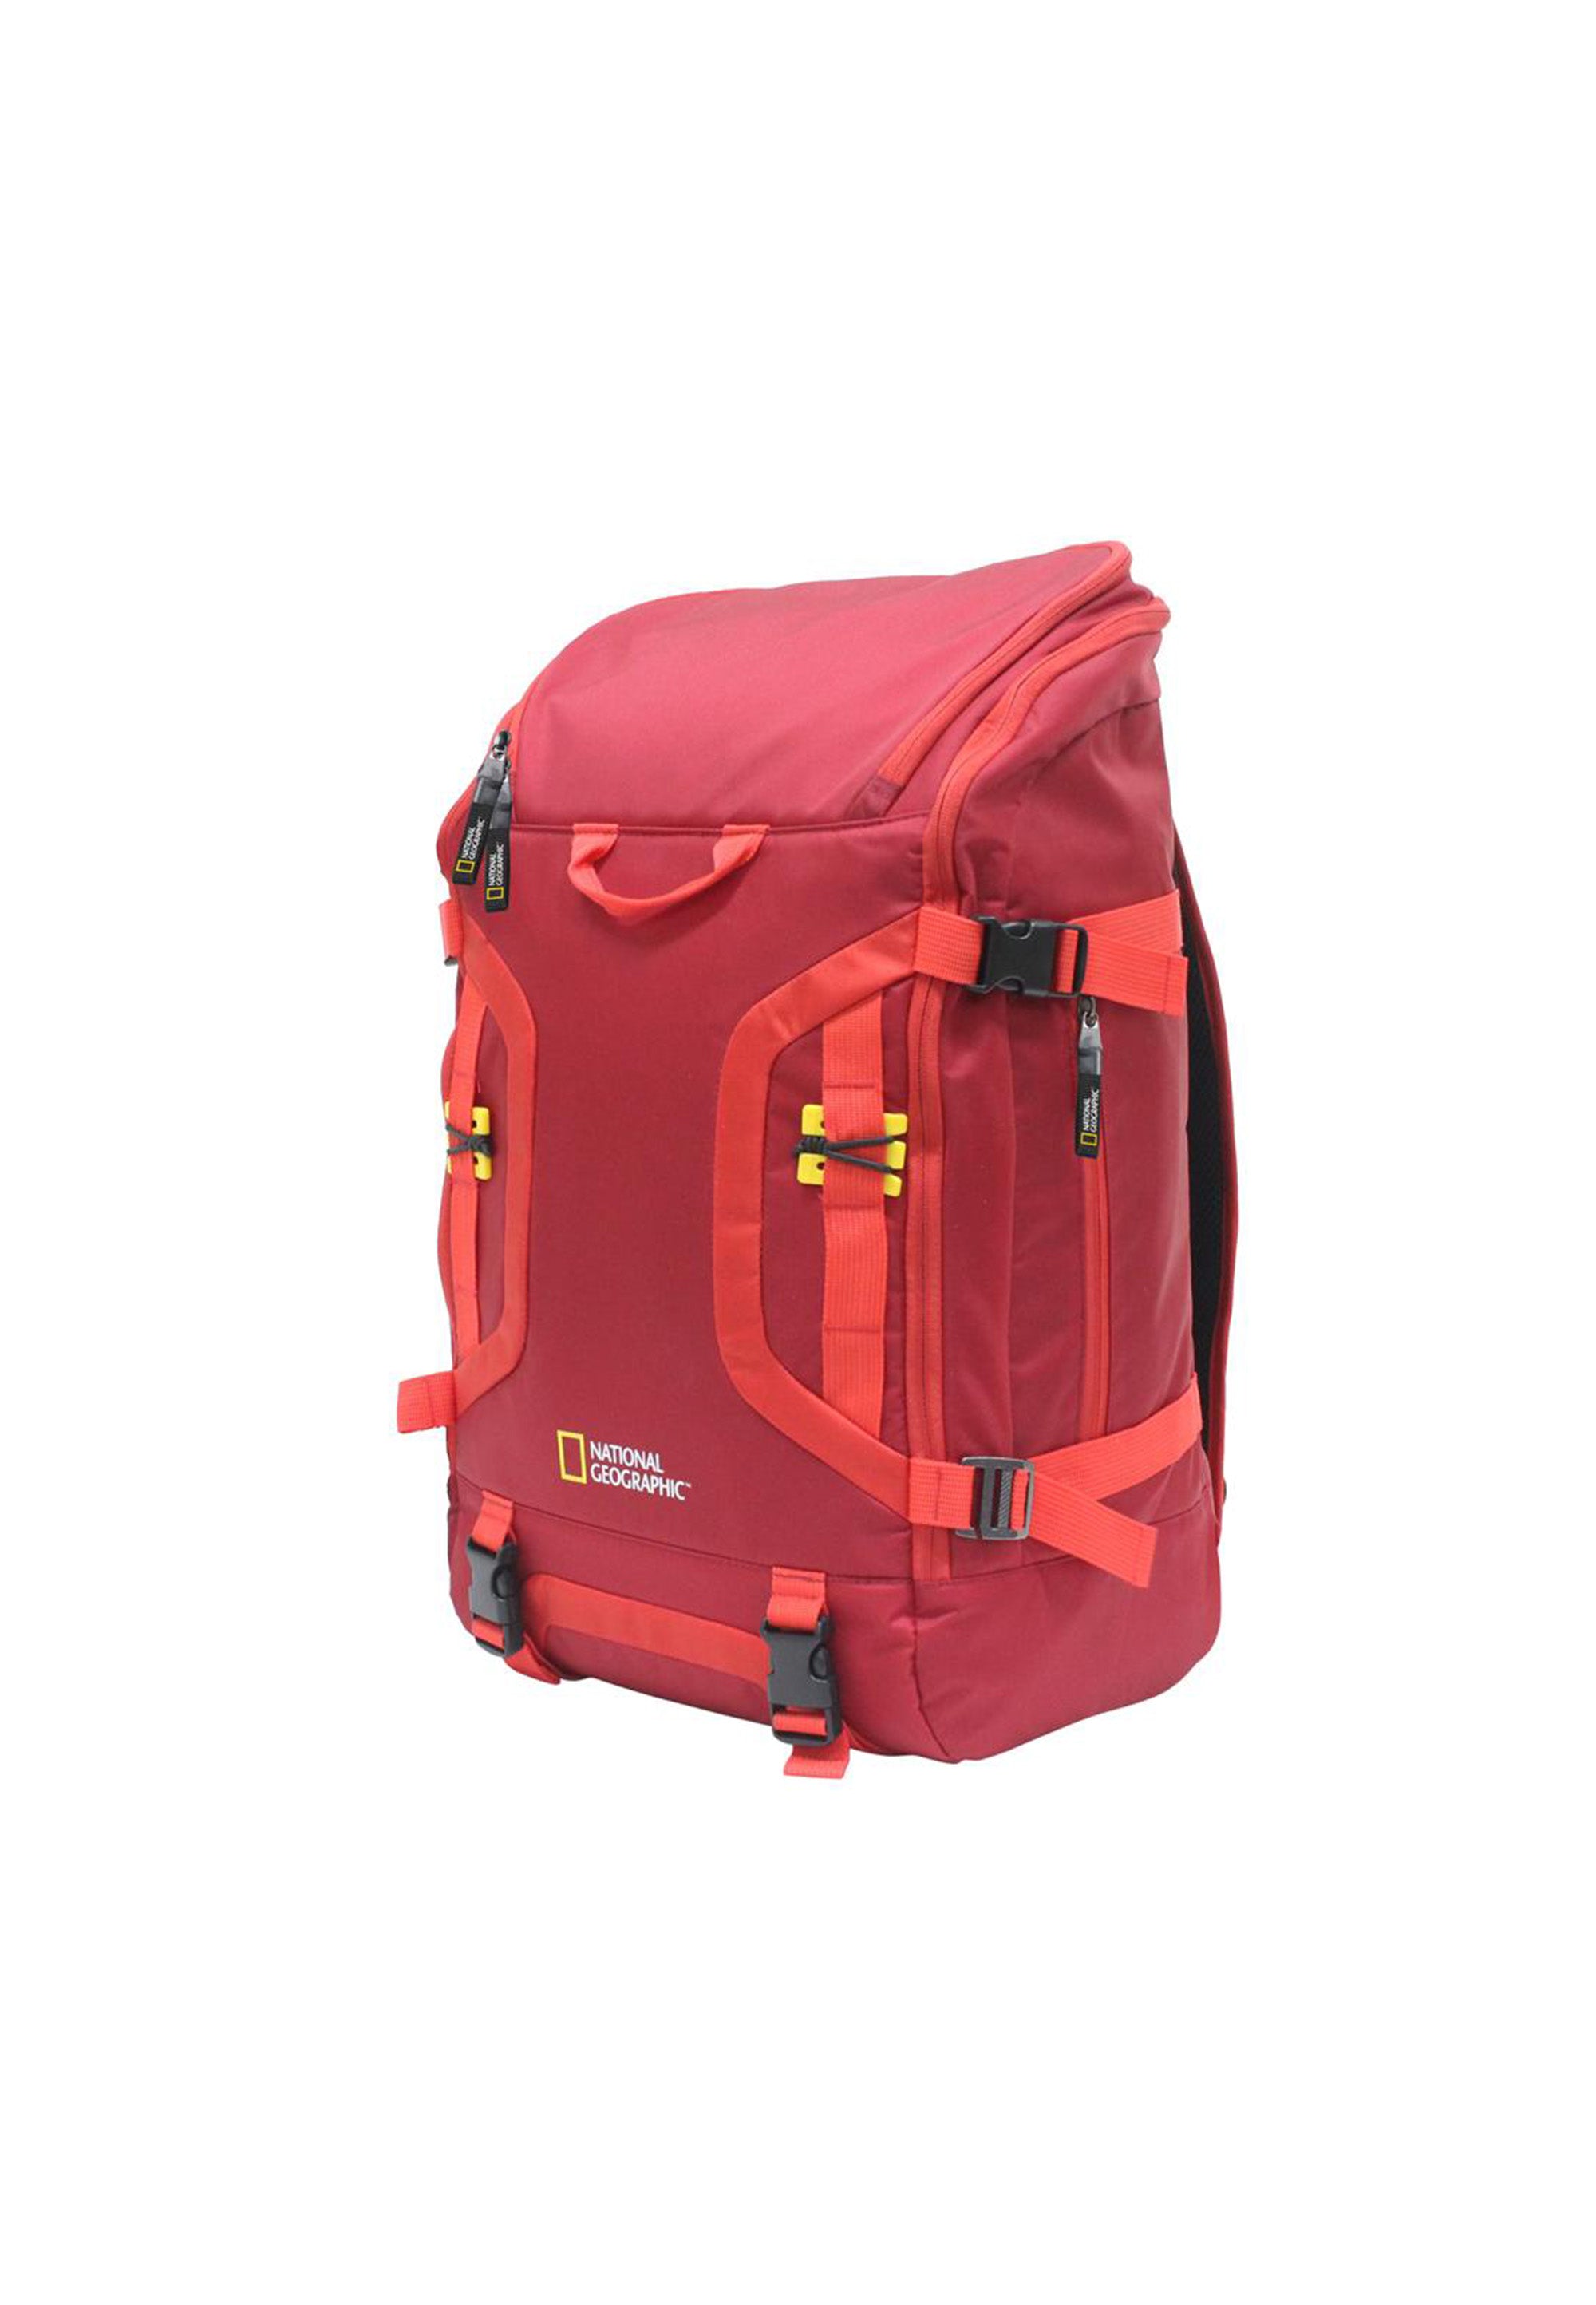 National Geographic - Discover | Outdoor Freizeit Rucksack mit Laptopfach | Rot